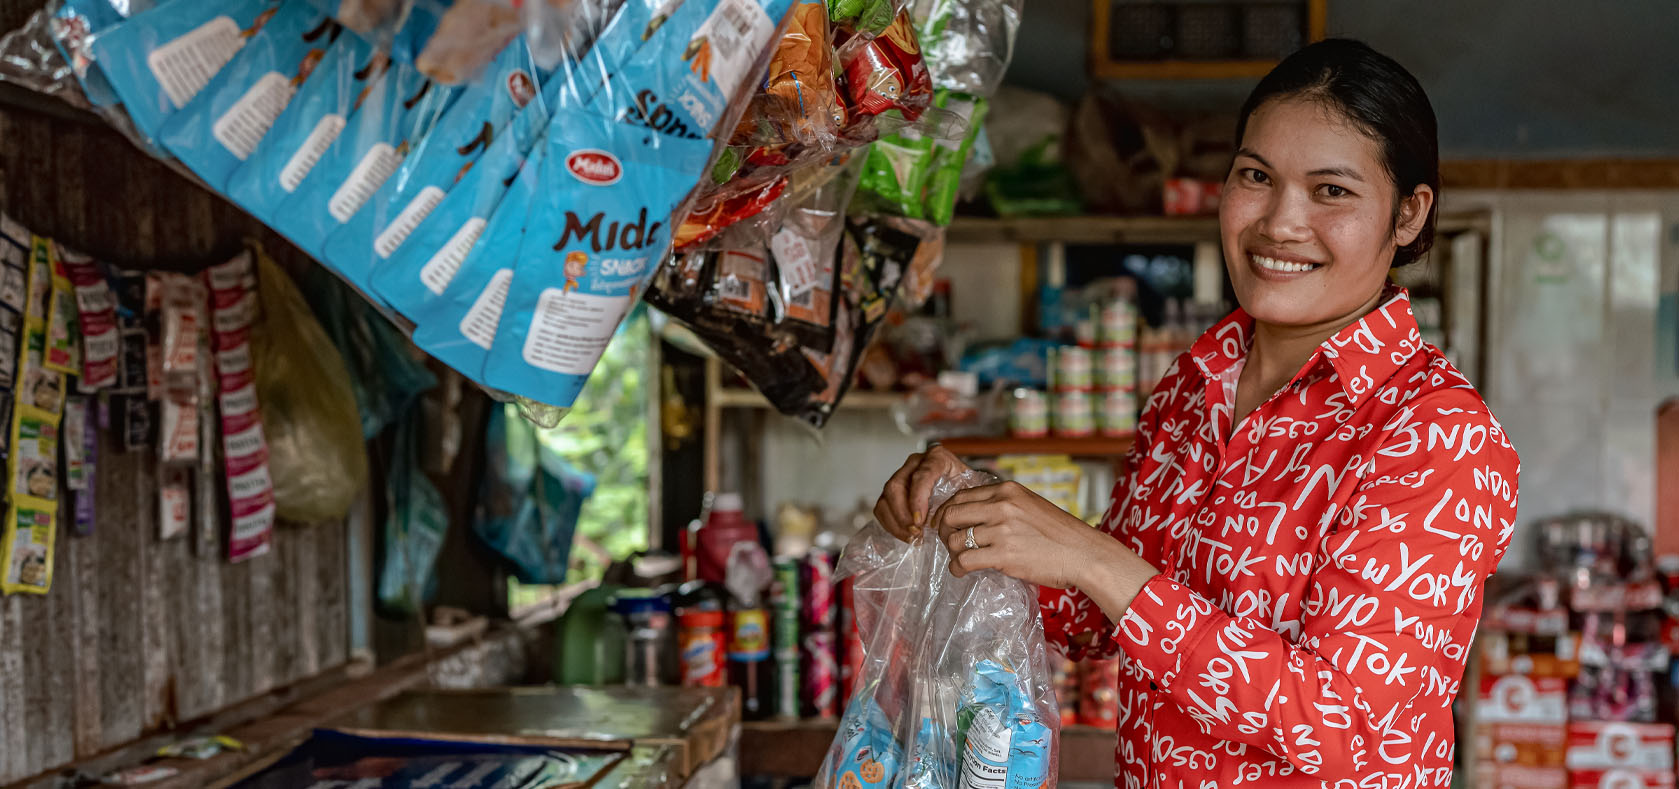 Chhann Koury now runs a successful grocery store business after UN Women training. UN Women/Ploy Phutpheng